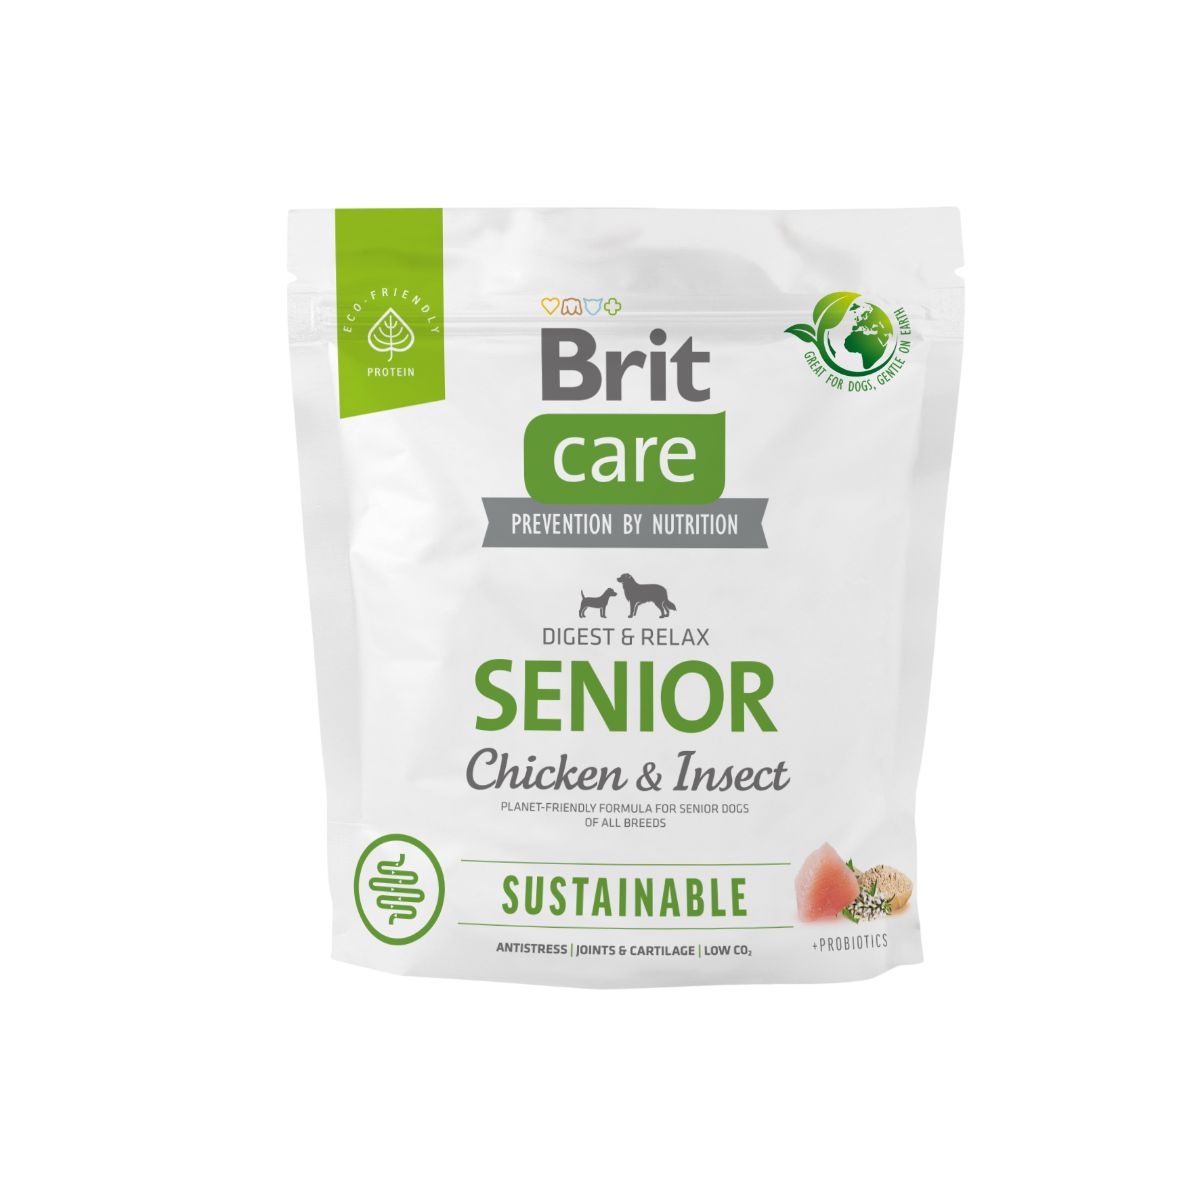 Brit Care – Sustainable – Senior-4